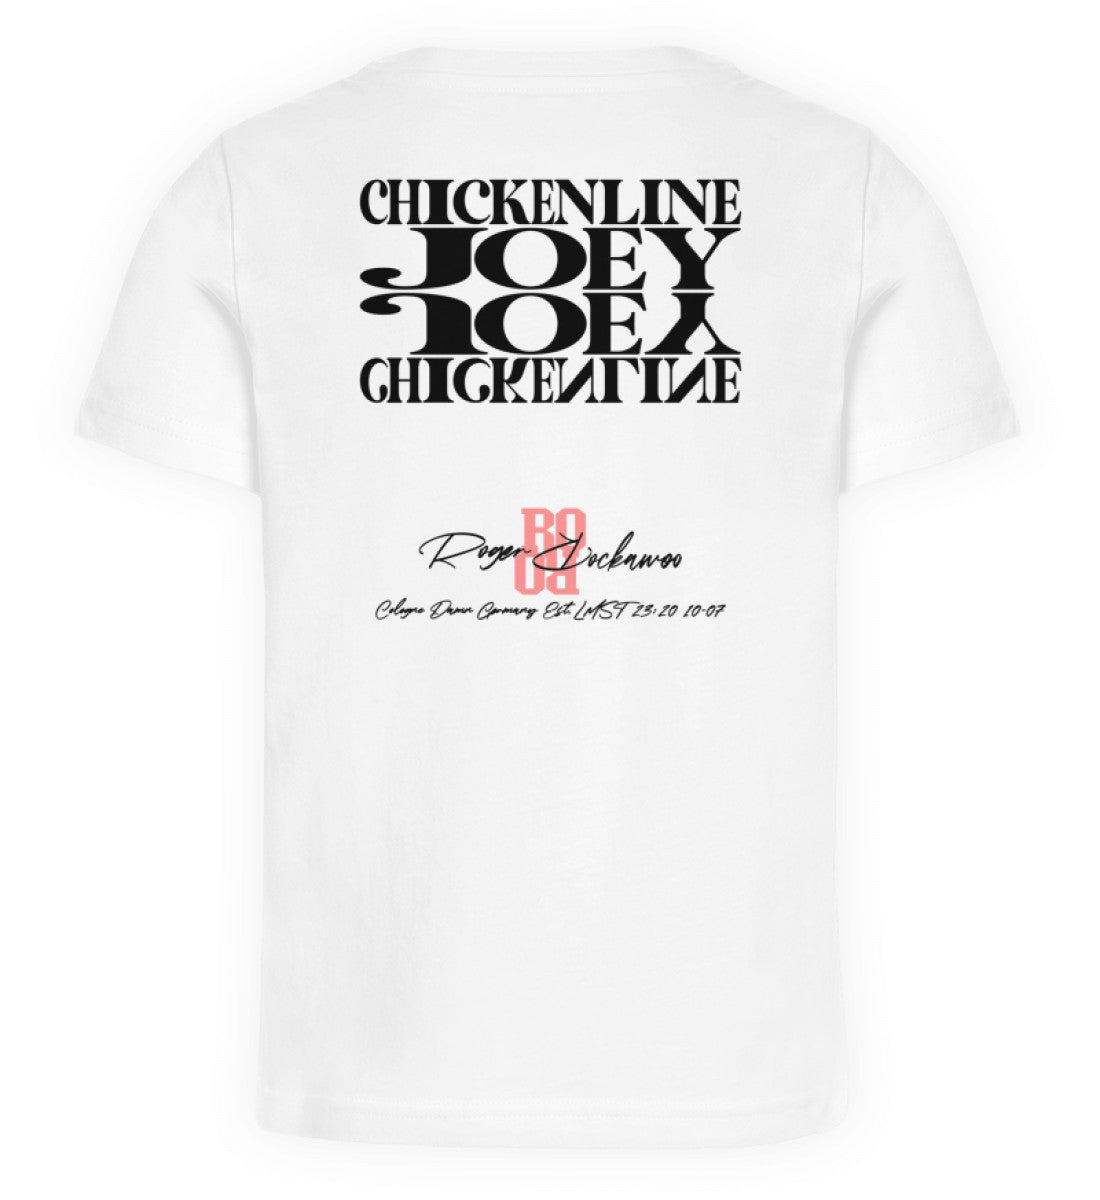 Weißes T-Shirt Unisex für Kinder Jungen und Maedchen in schwarz bedruckt mit dem Schriftzug Design der Downhill Chickenline Joey Kollektion und dem Logo Schriftzug von Roger Rockawoo Clothing